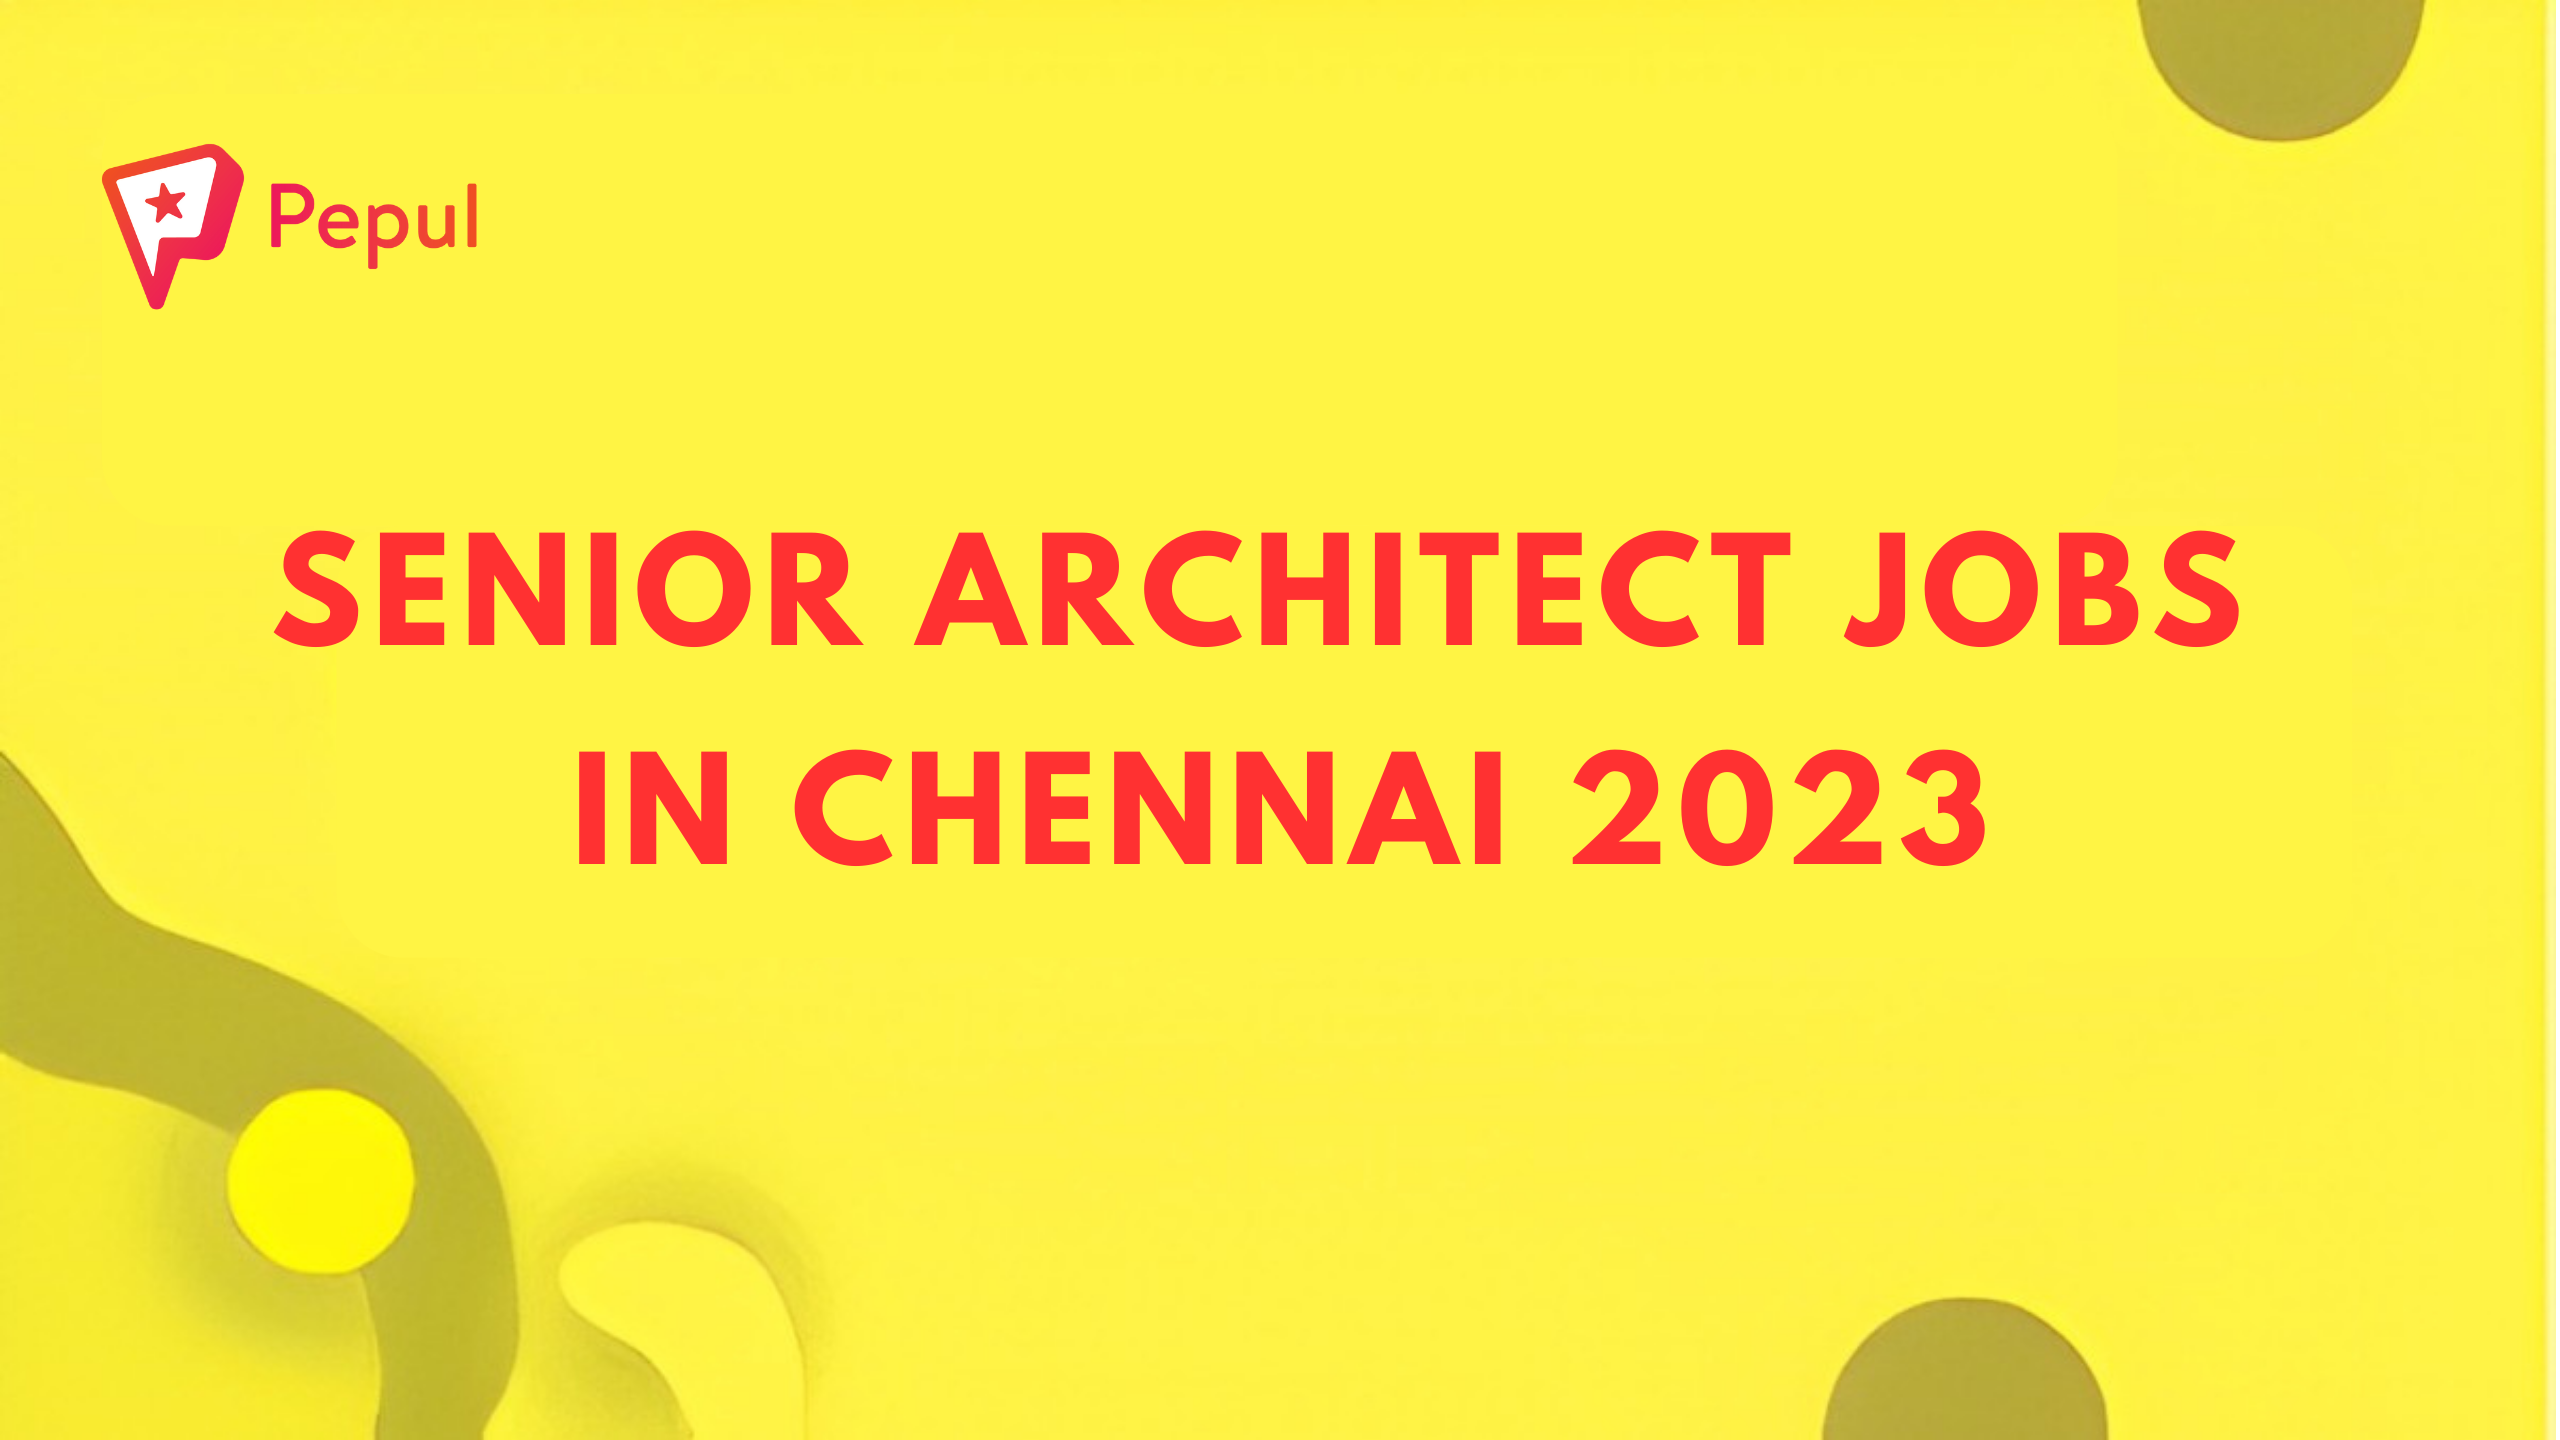 Senior Architect Jobs in Chennai 2023